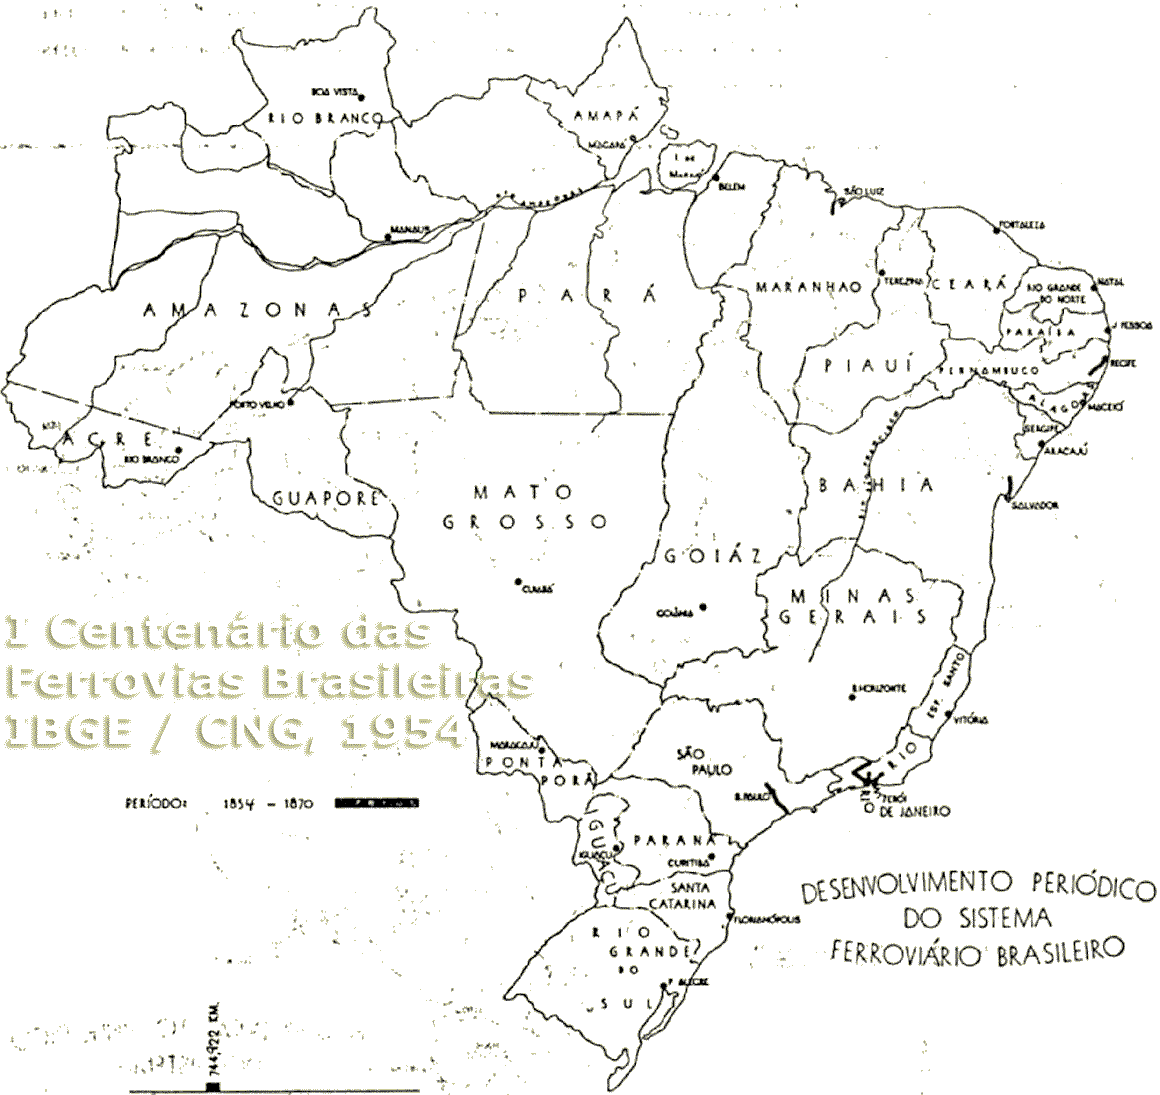 Mapa das estradas de ferro existentes no Brasil em 1870